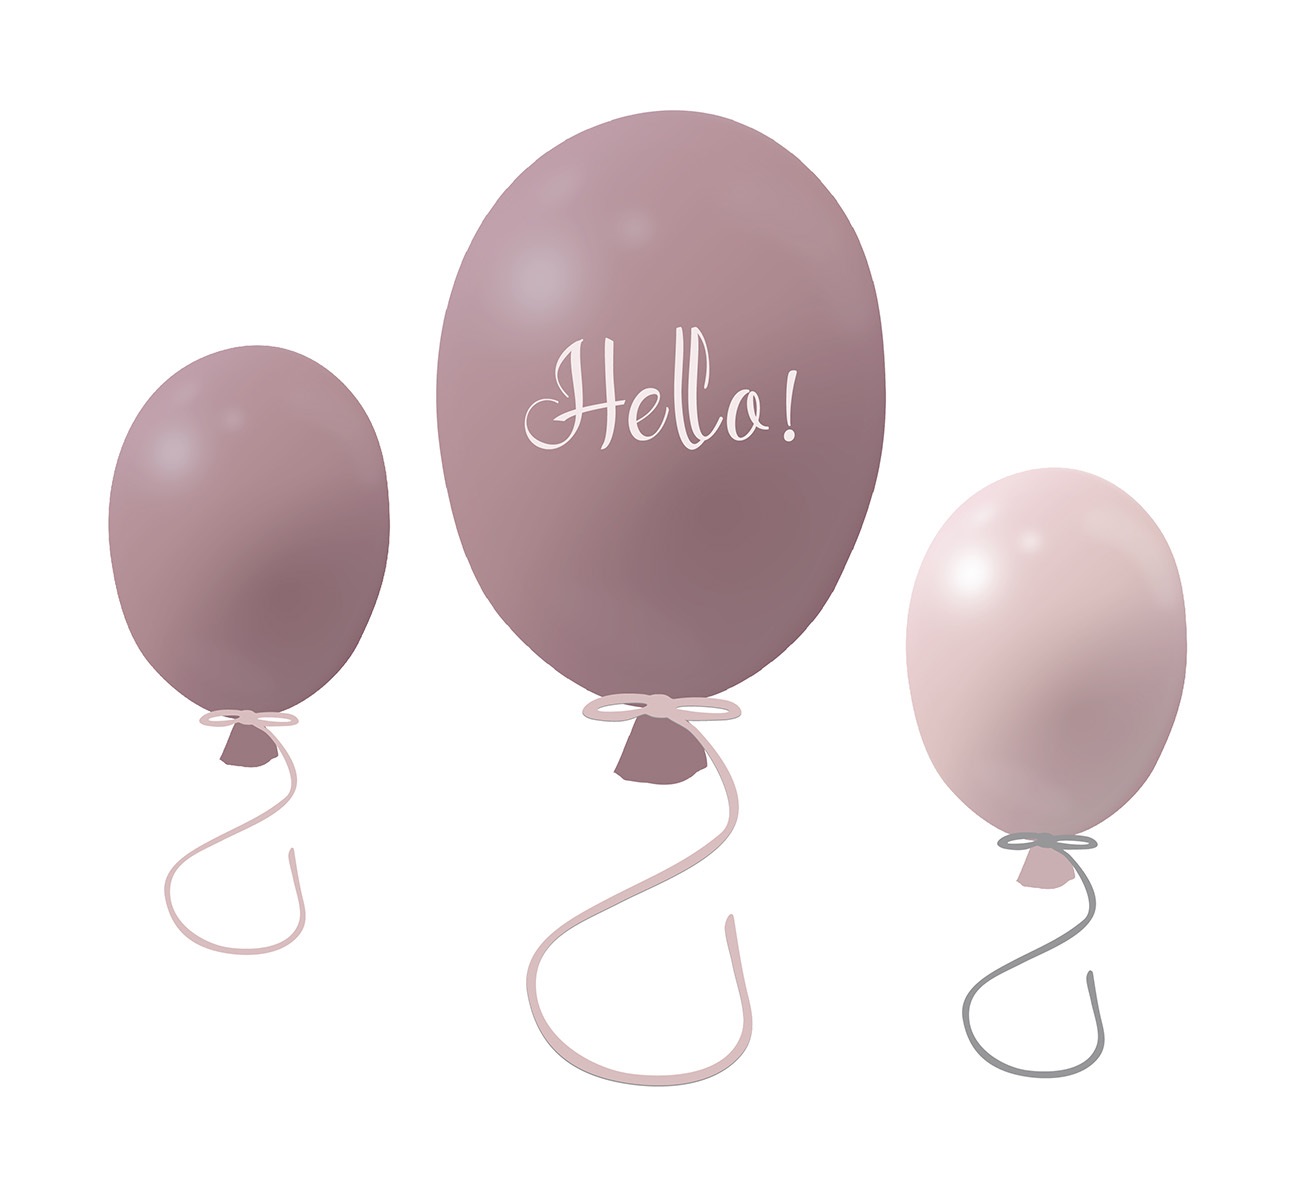 Väggklistermärke partyballonger Hello 3-pack, dusty pink - defekt 